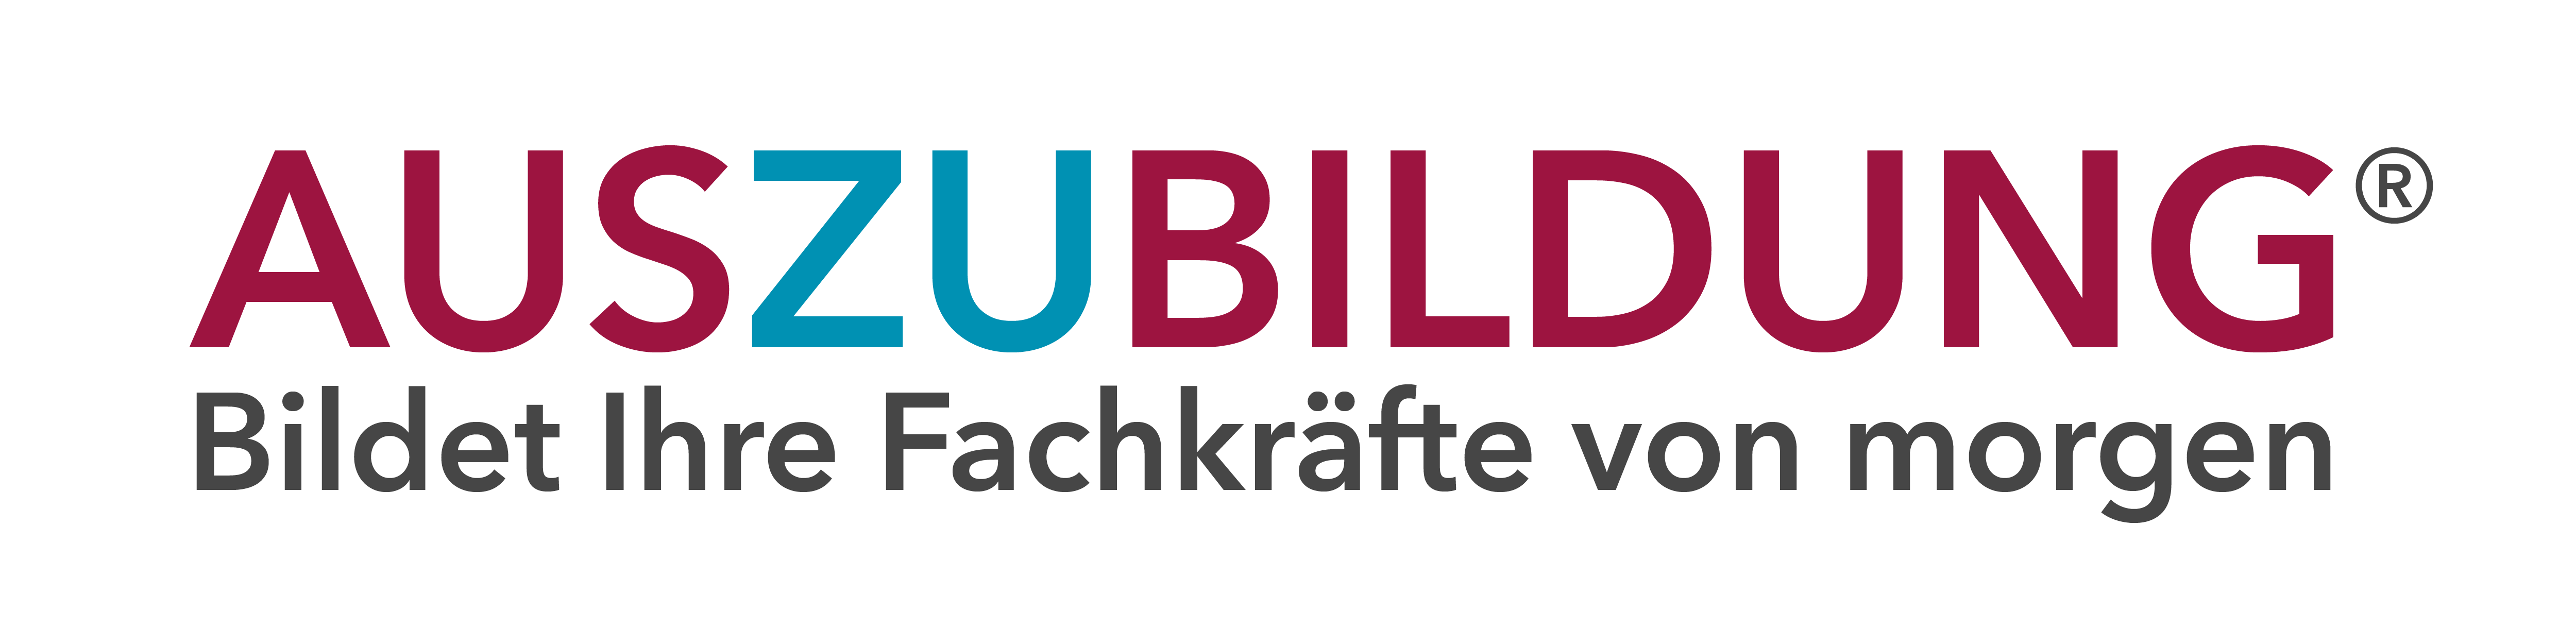 AUSzuBILDUNG Logo: Eine MArke der SO Beratung